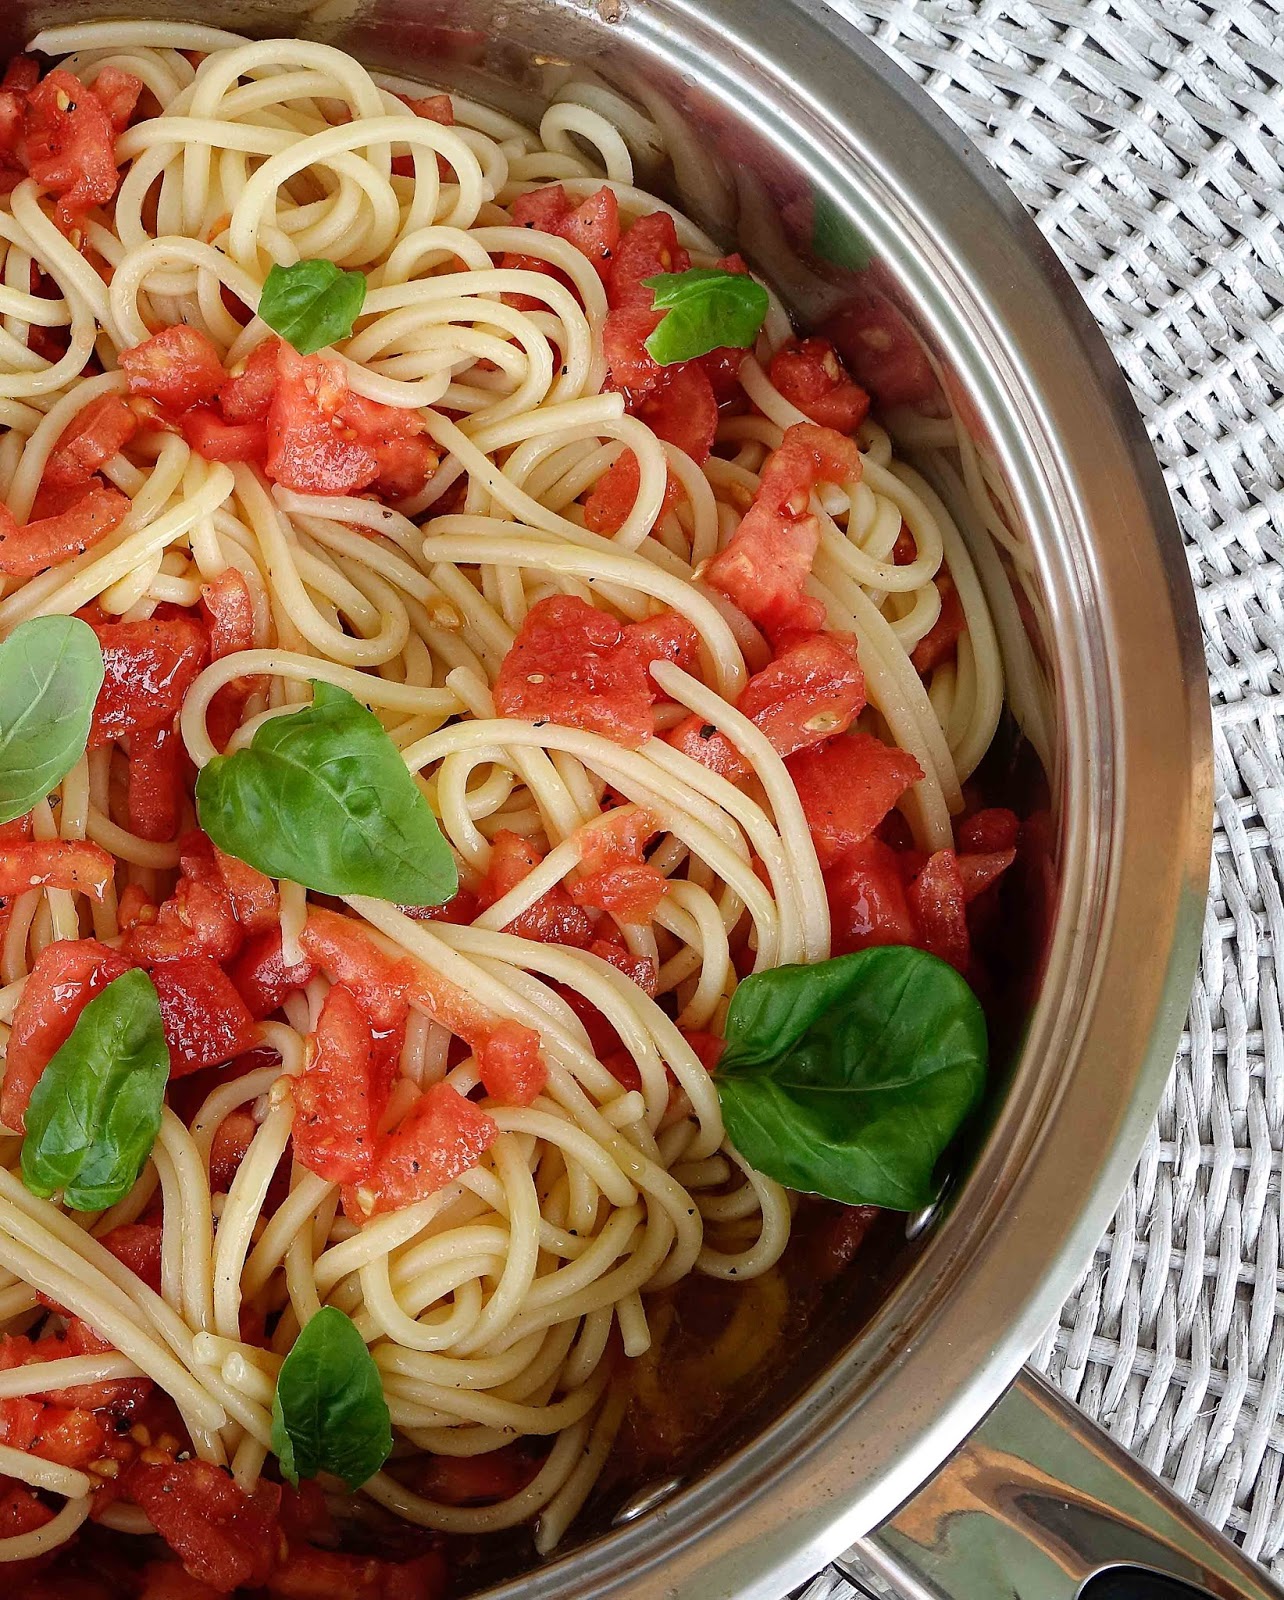 stuttgartcooking: Spaghetti mit roher Tomaten-Sauce